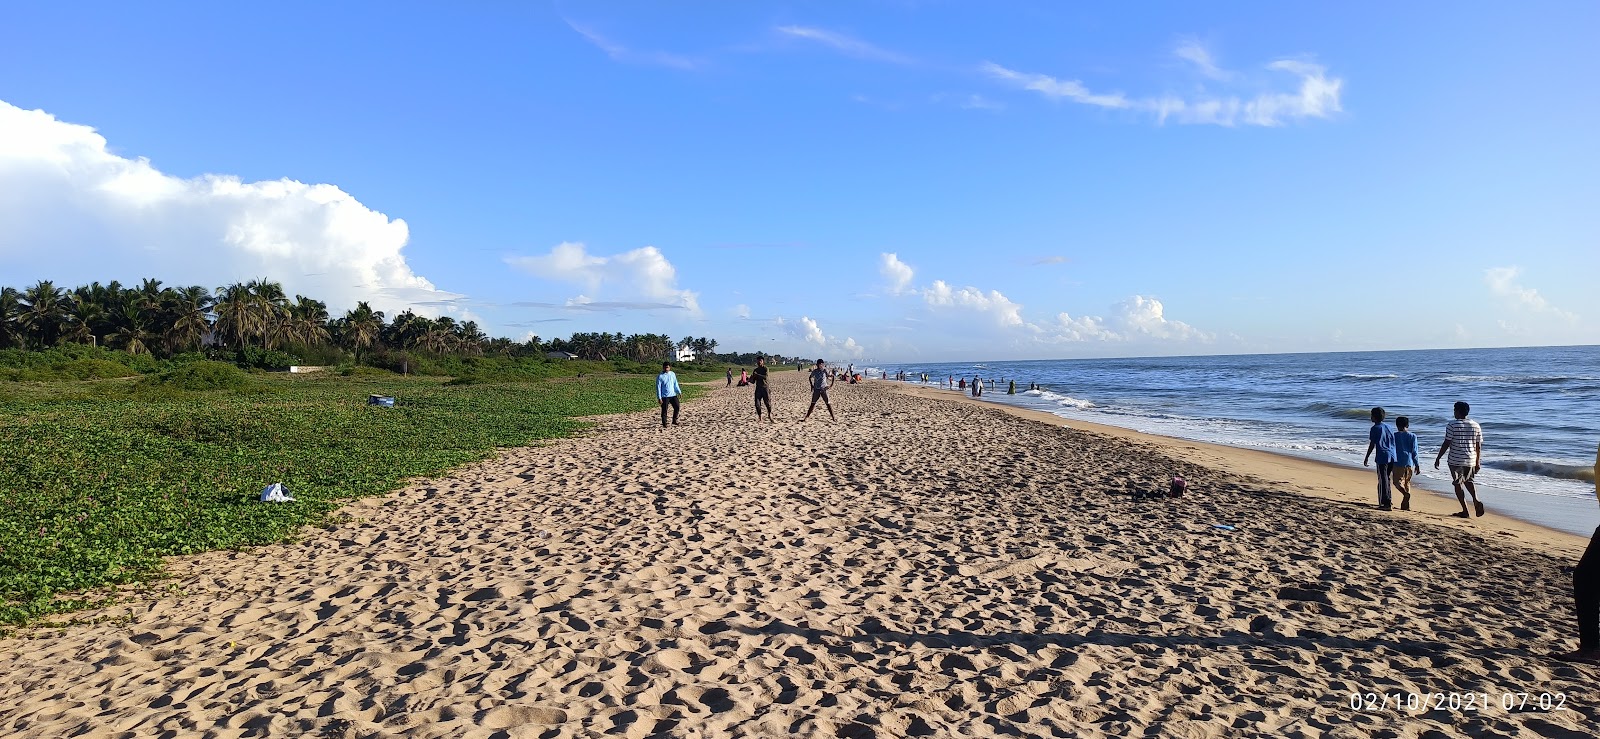 Foto von Akkarai Beach mit langer gerader strand